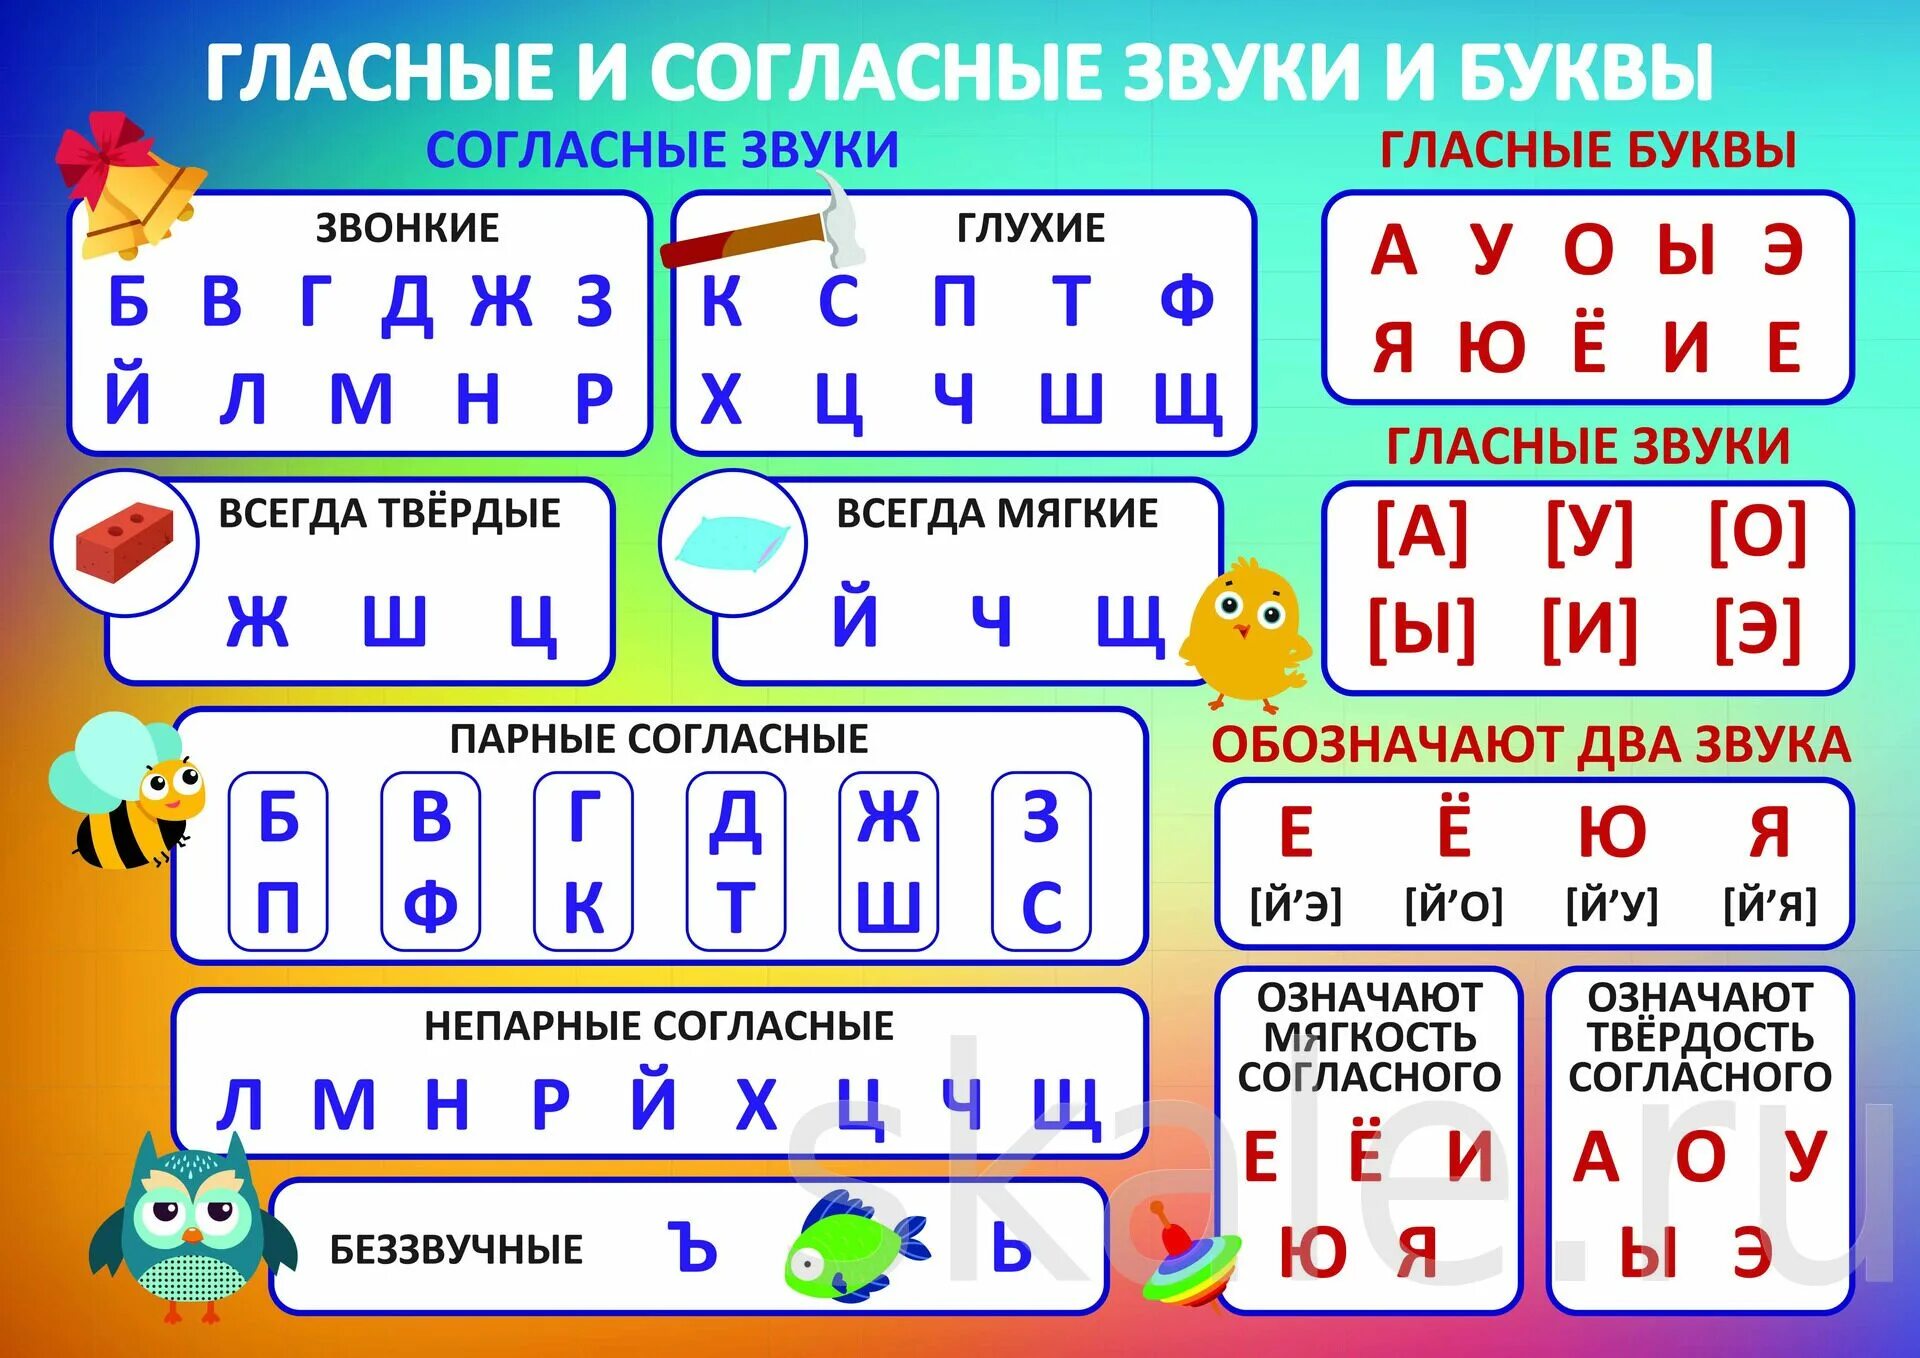 Буквы 2 порядка для 1 класса. Таблица алфавита русского языка гласные и согласные звуки и буквы. Русский алфавит гласные и согласные буквы и звуки. Таблица гласных и согласных звуков для 1 класса. Таблица гласных и согласных букв и звуков для 1 класса.